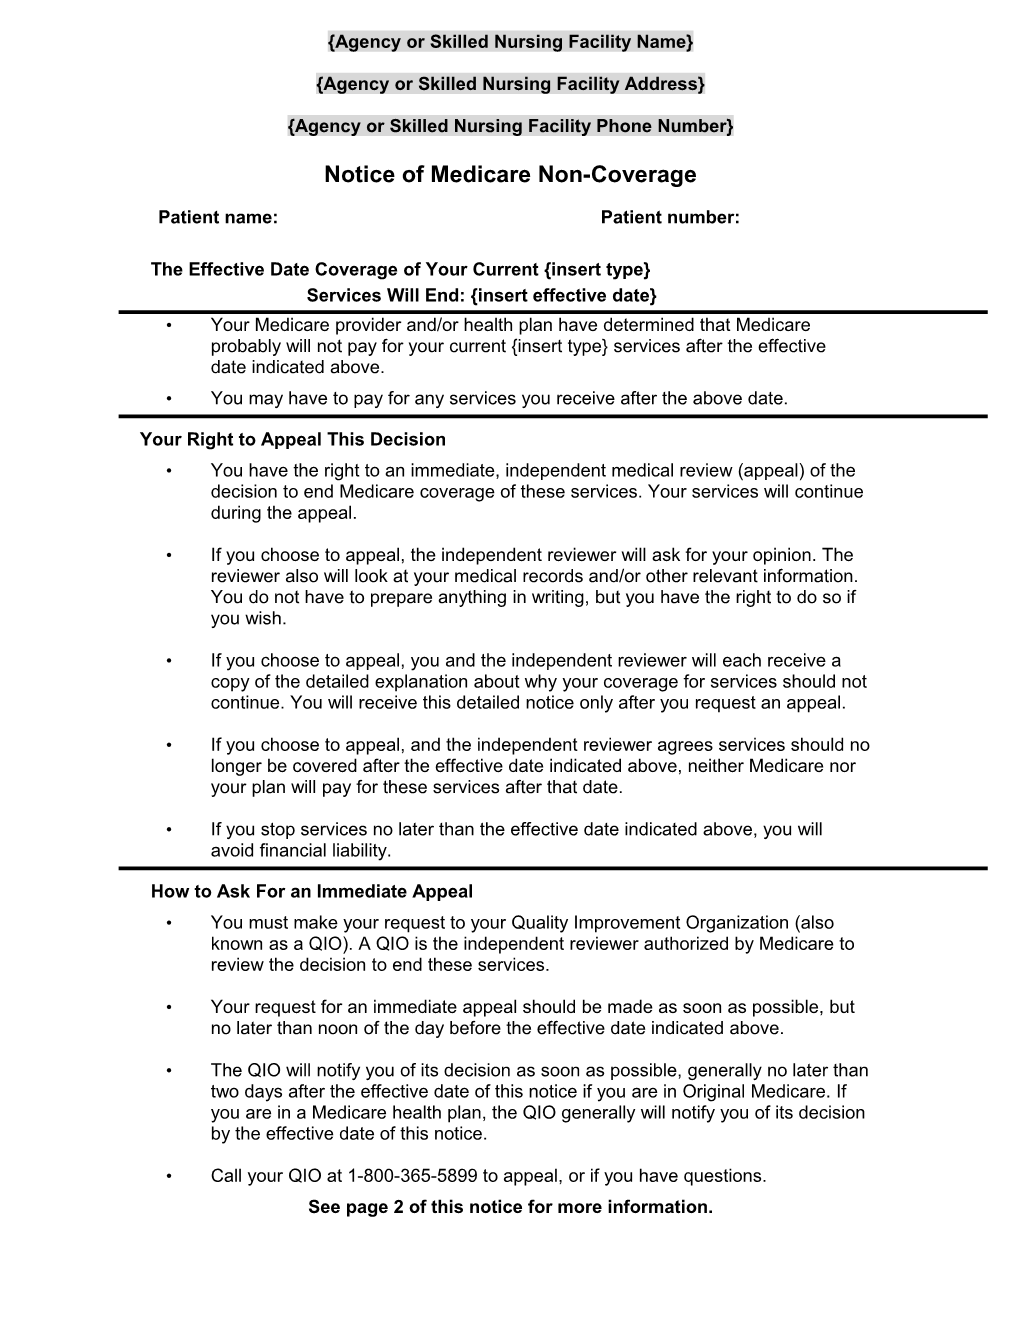 BCN Advantage Notice of Medicare Noncoverage s1